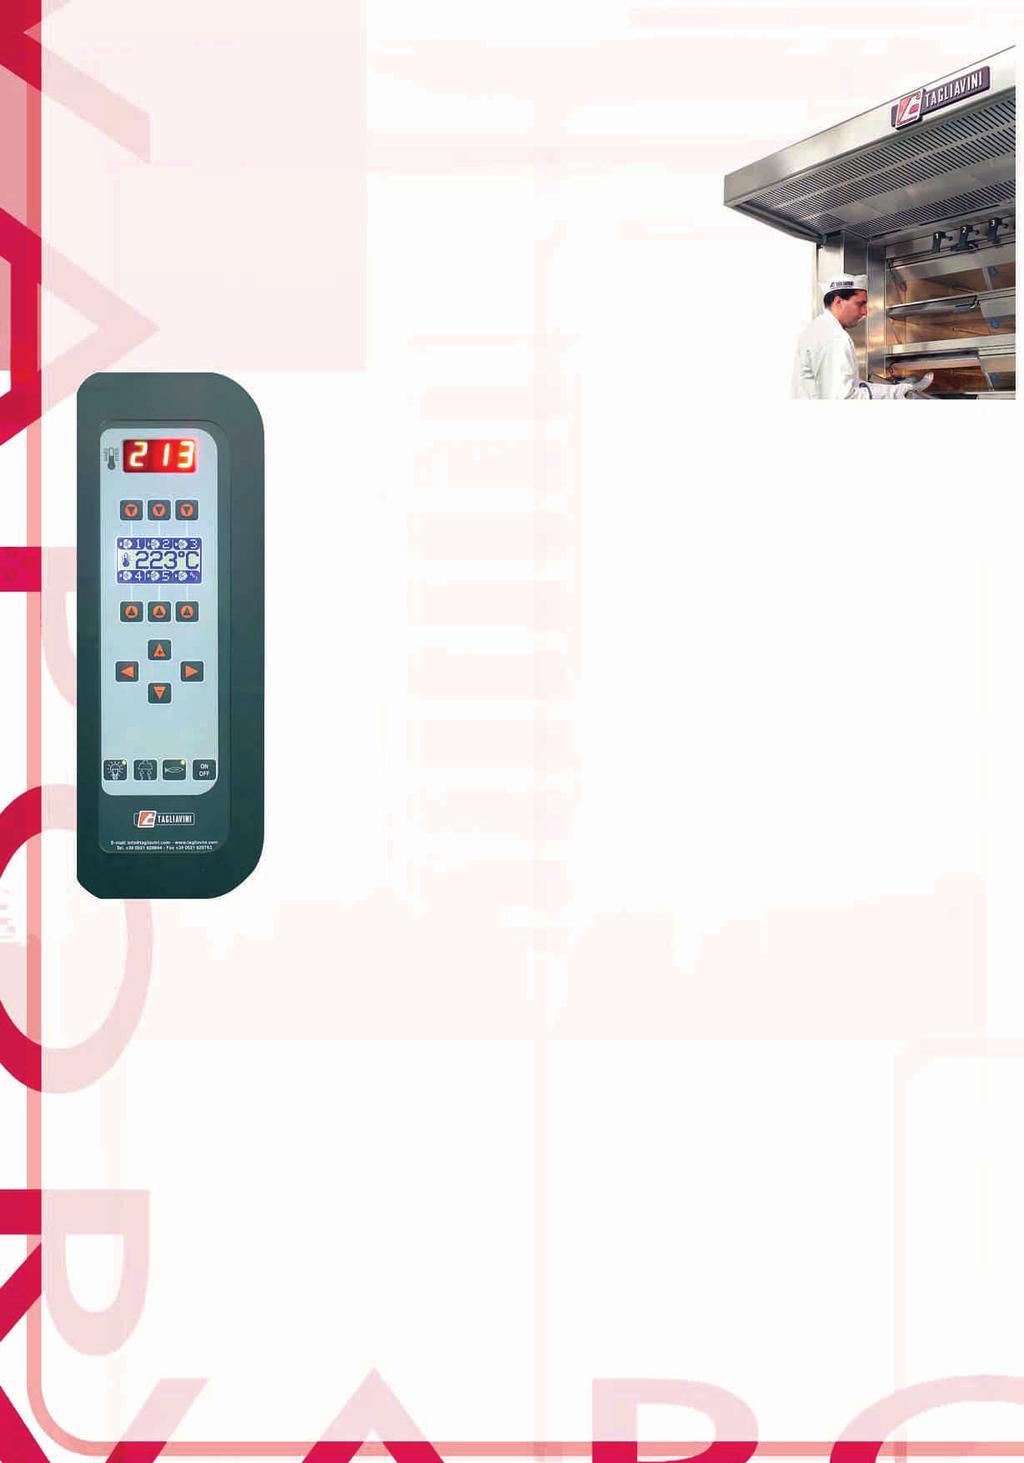 La centralina digitale standard, permette: - Controllo della temperatura tramite una sonda posta direttamente nella camera di cottura.